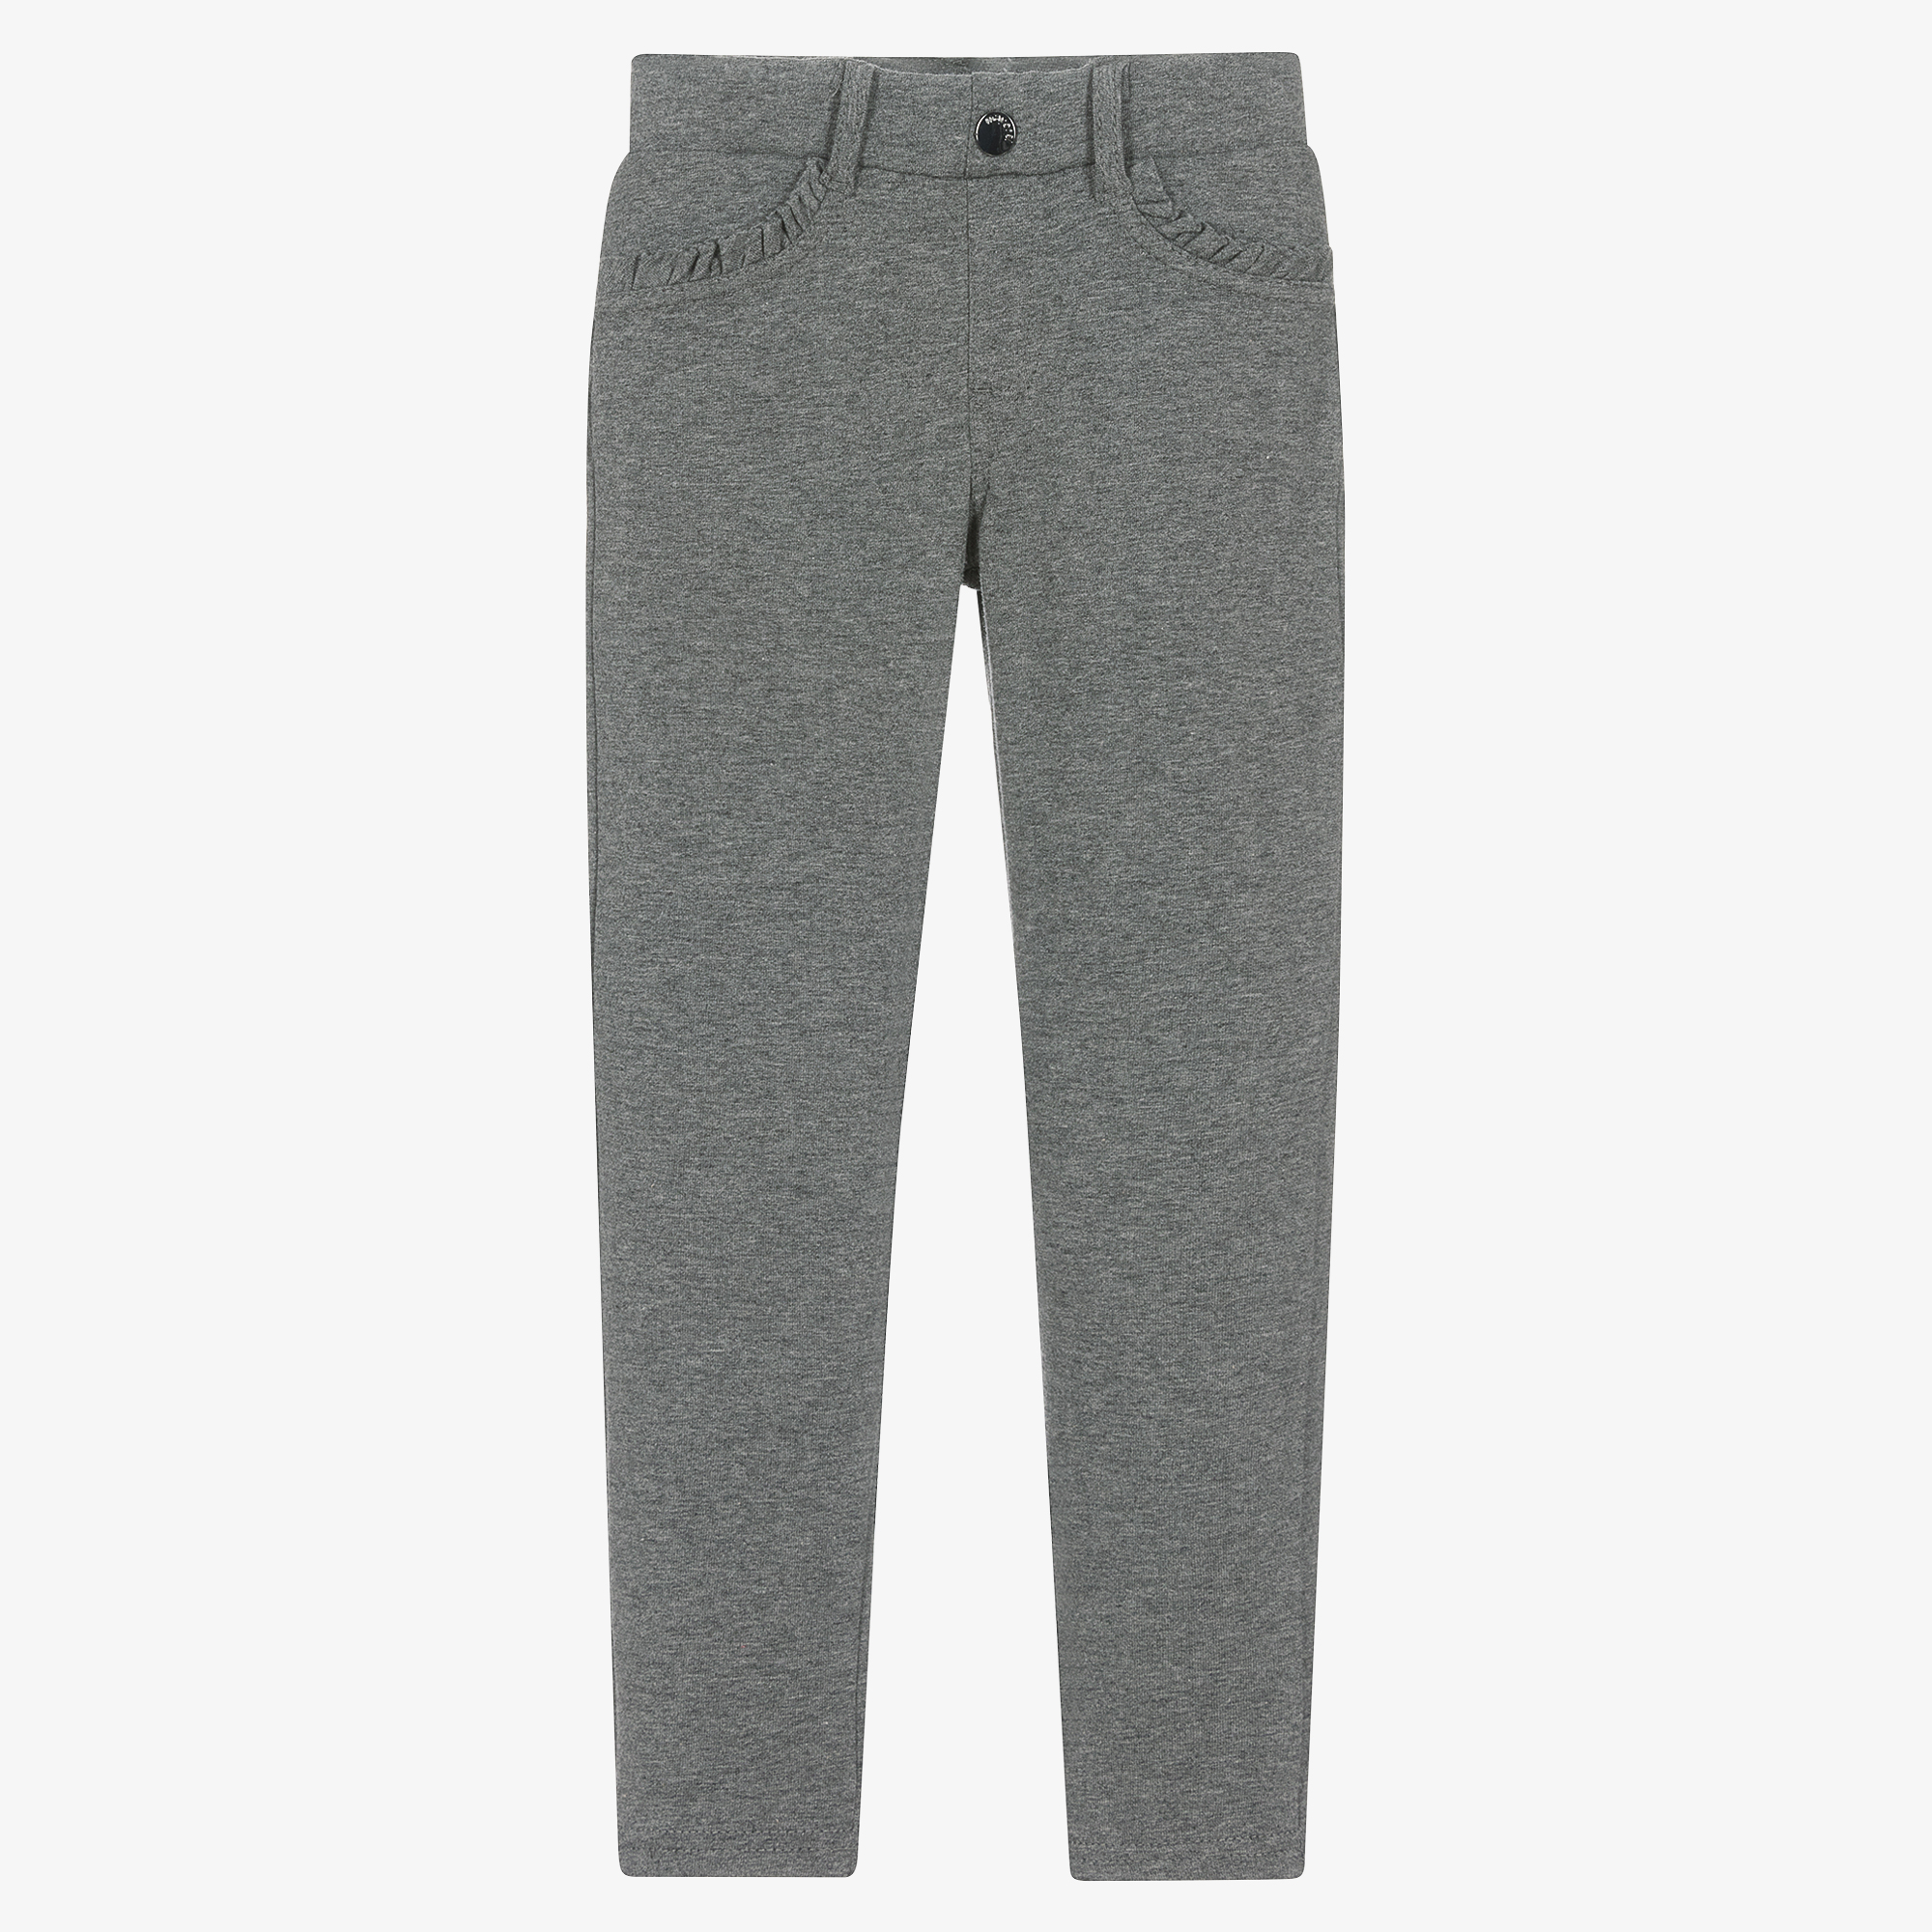 BOSS - Slim-fit jeans in gray super-stretch denim